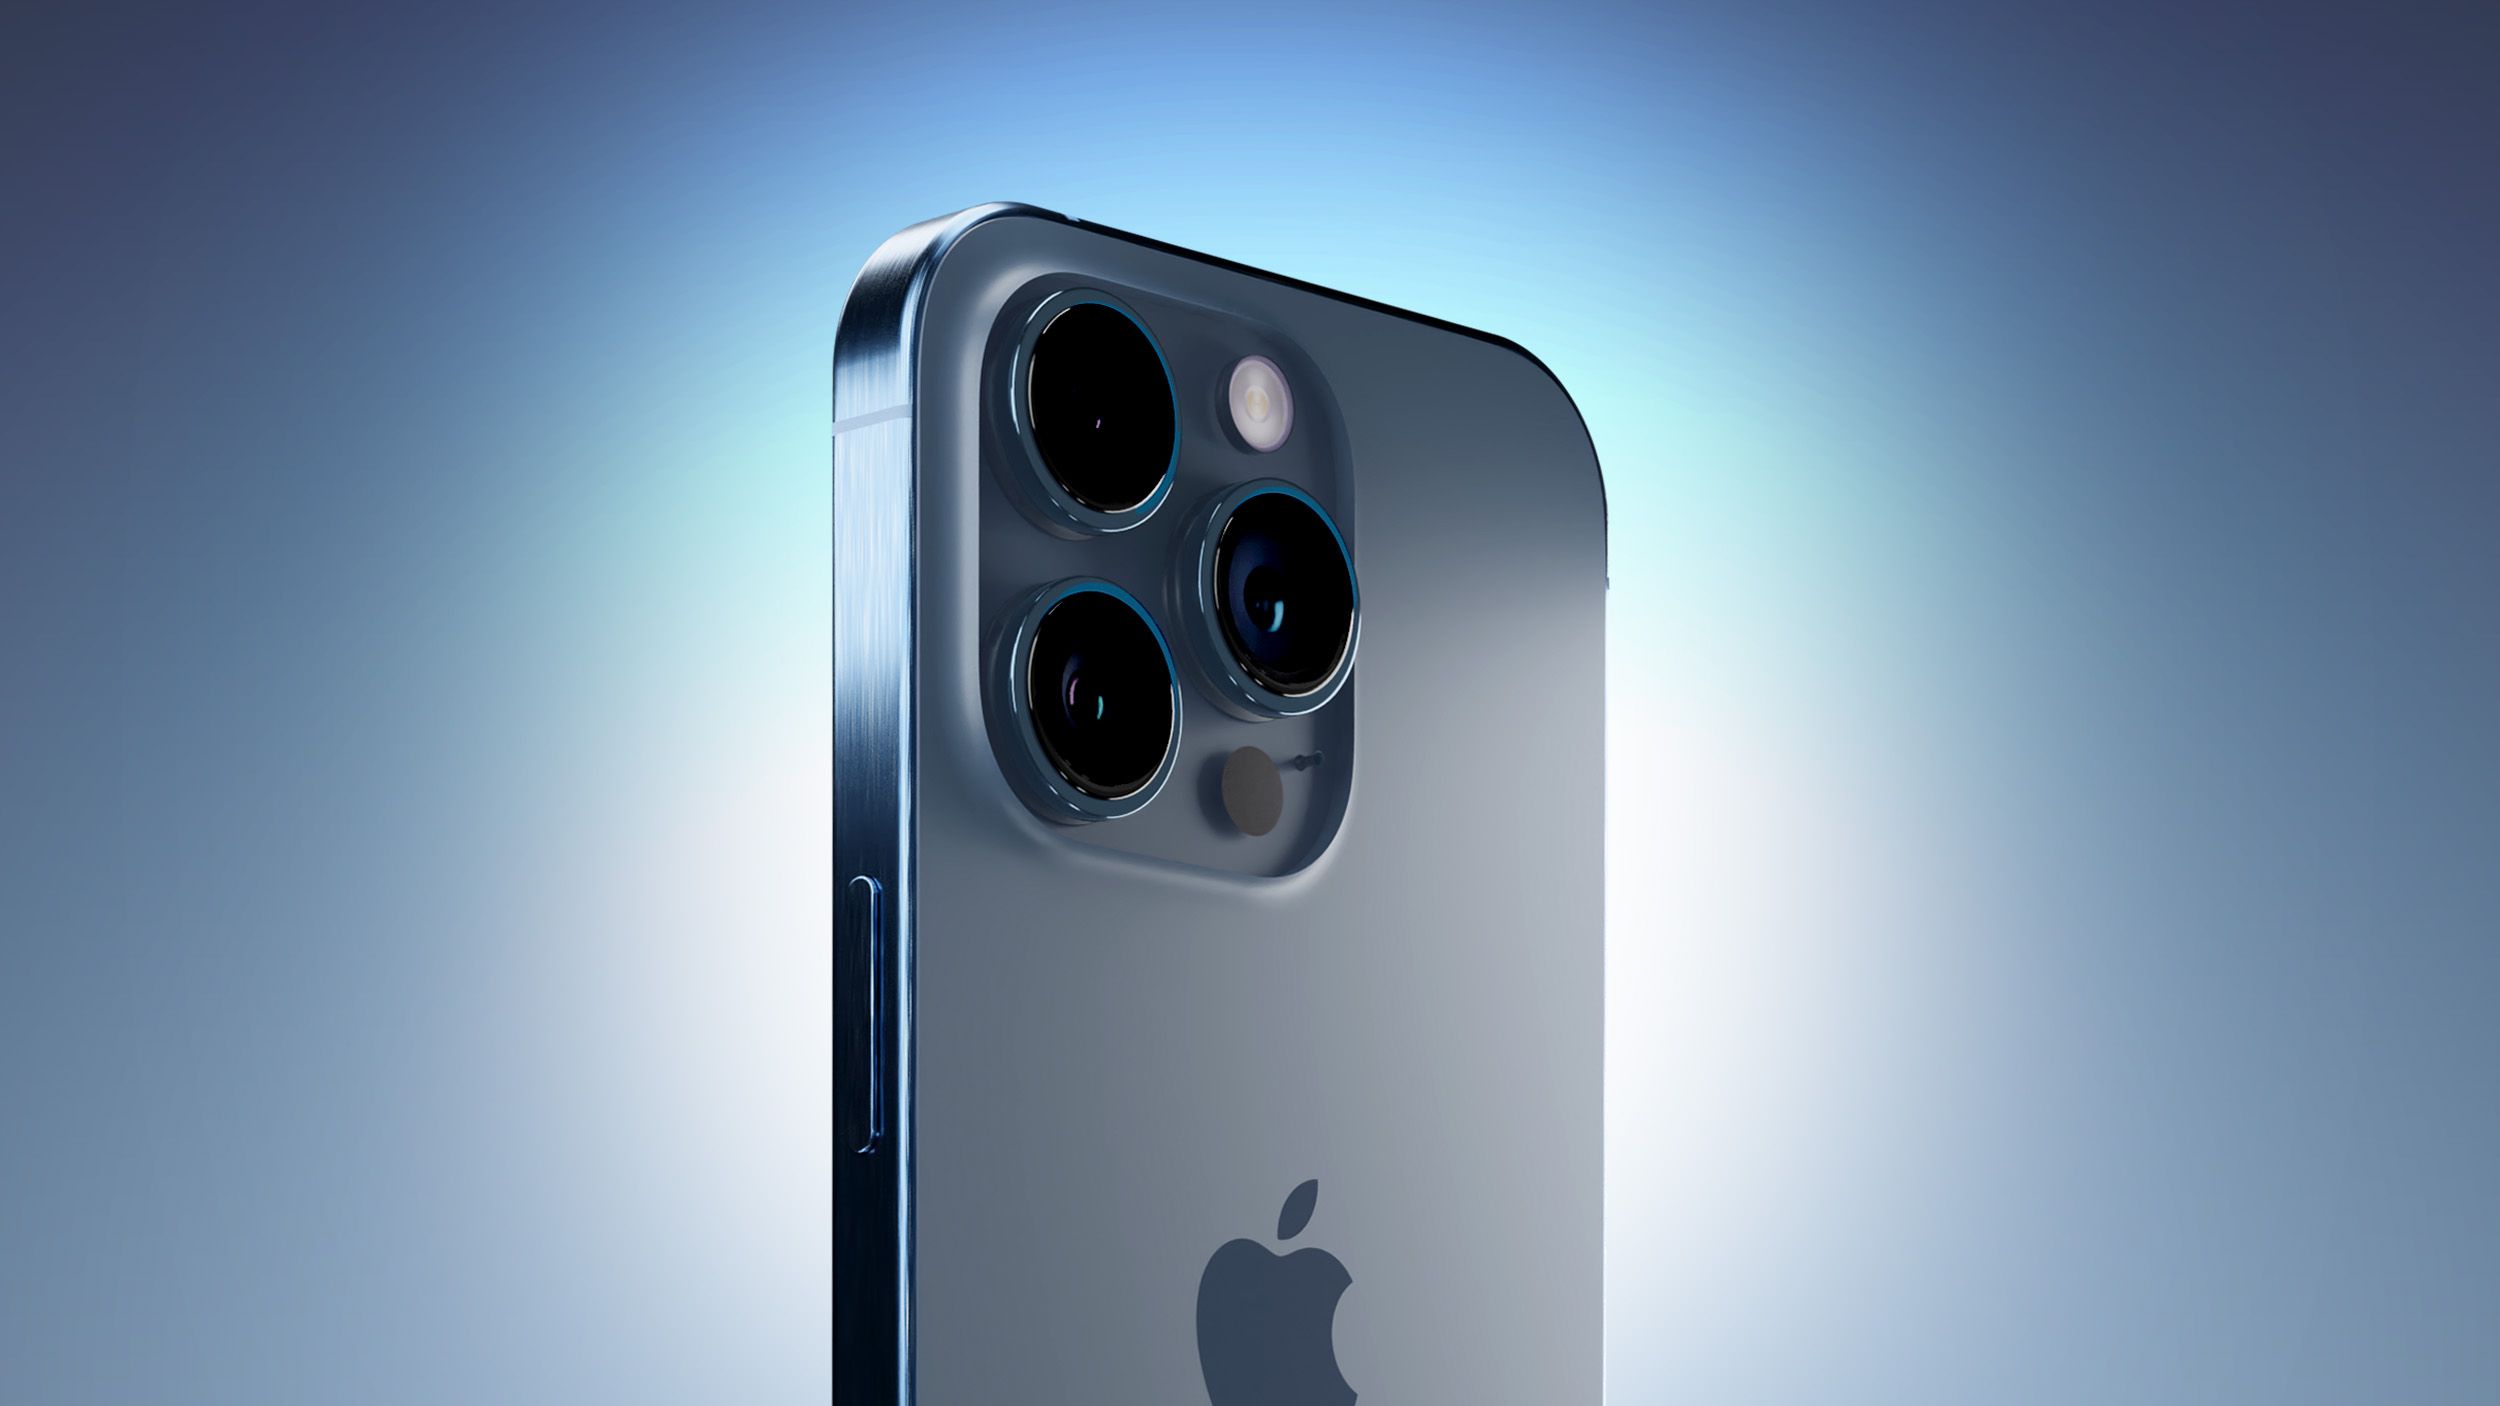 Her iPhone Kullanıcısının Bilmesi Gereken 6 Kamera İpuçları